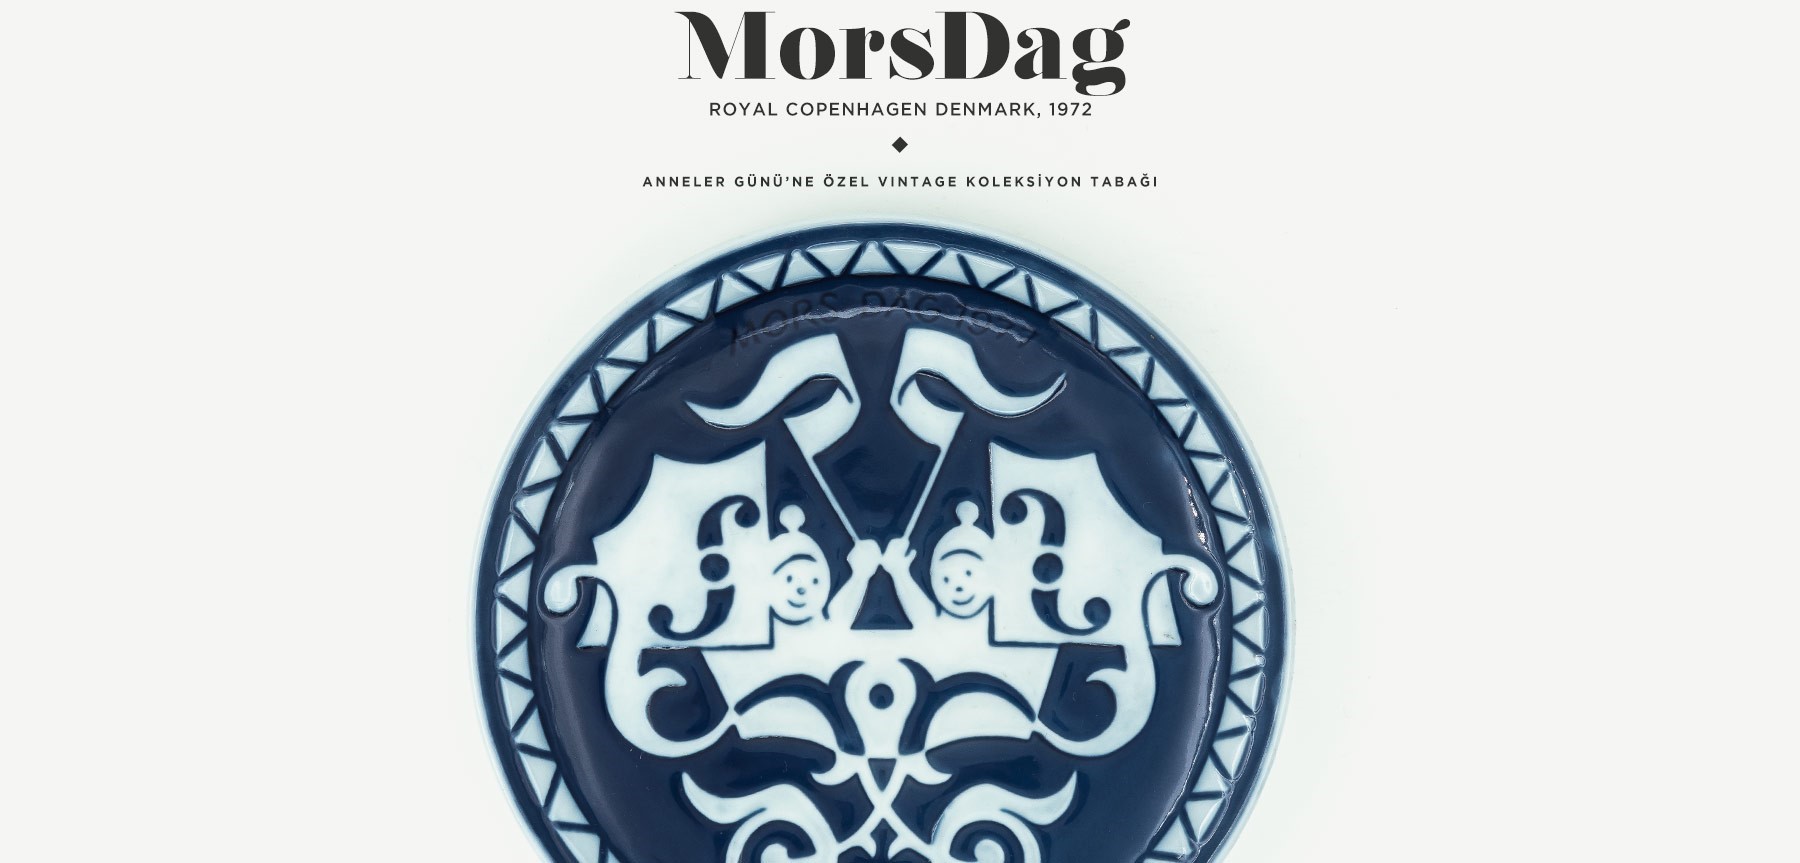 royal copenhagen mors dag koleksiyon tabağı'in resmi